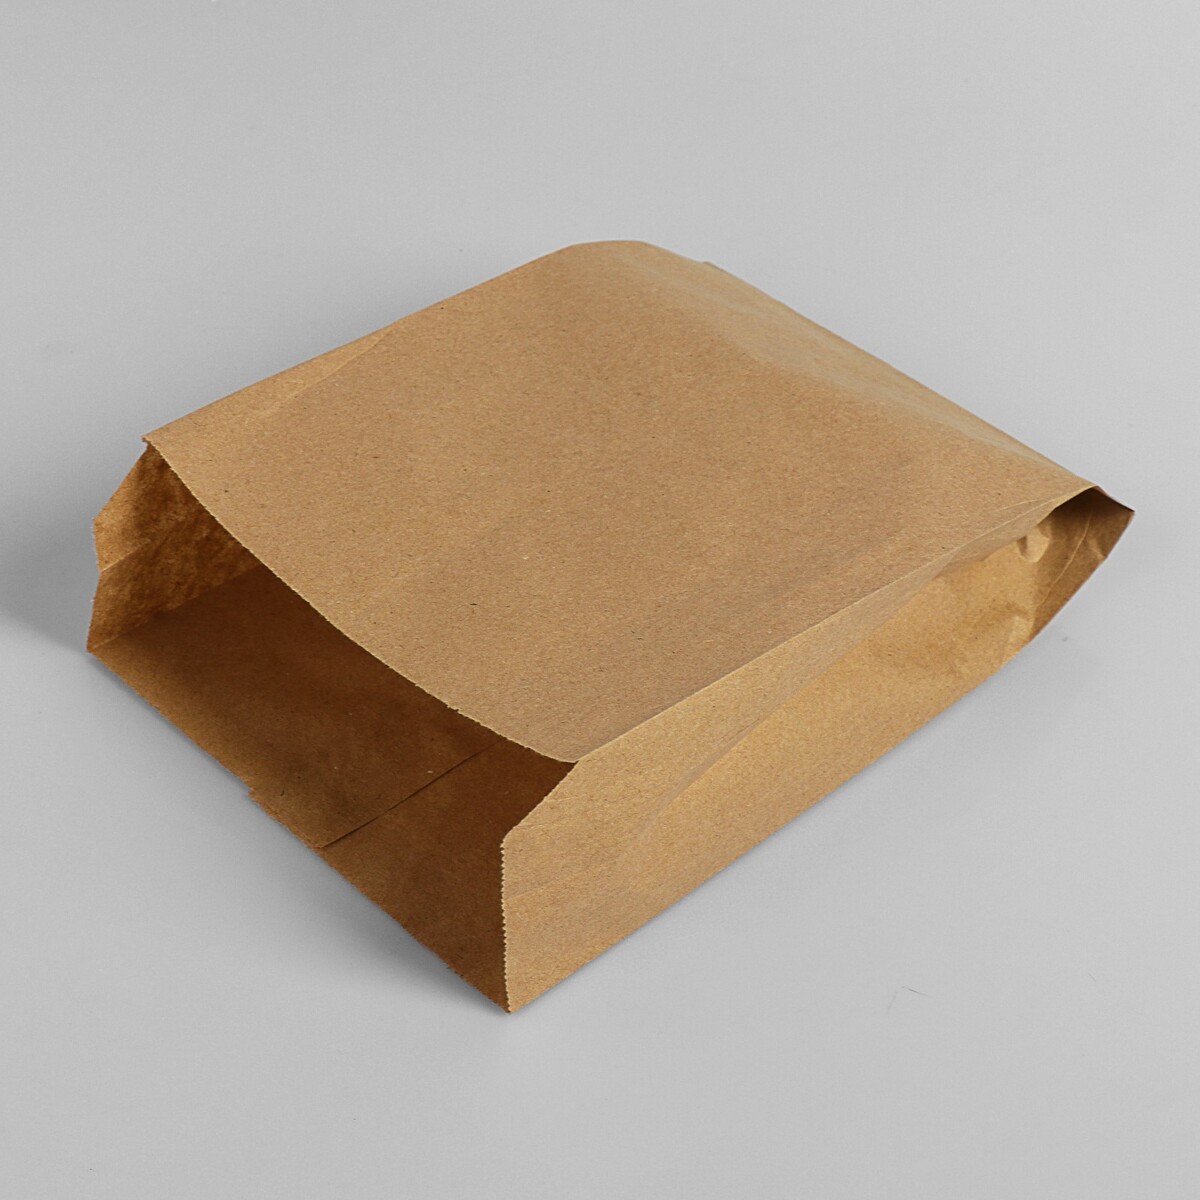 Пакет бумажный фасовочный, крафт, v-образное дно 25 х 17 х 7 см, набор 100 шт No brand